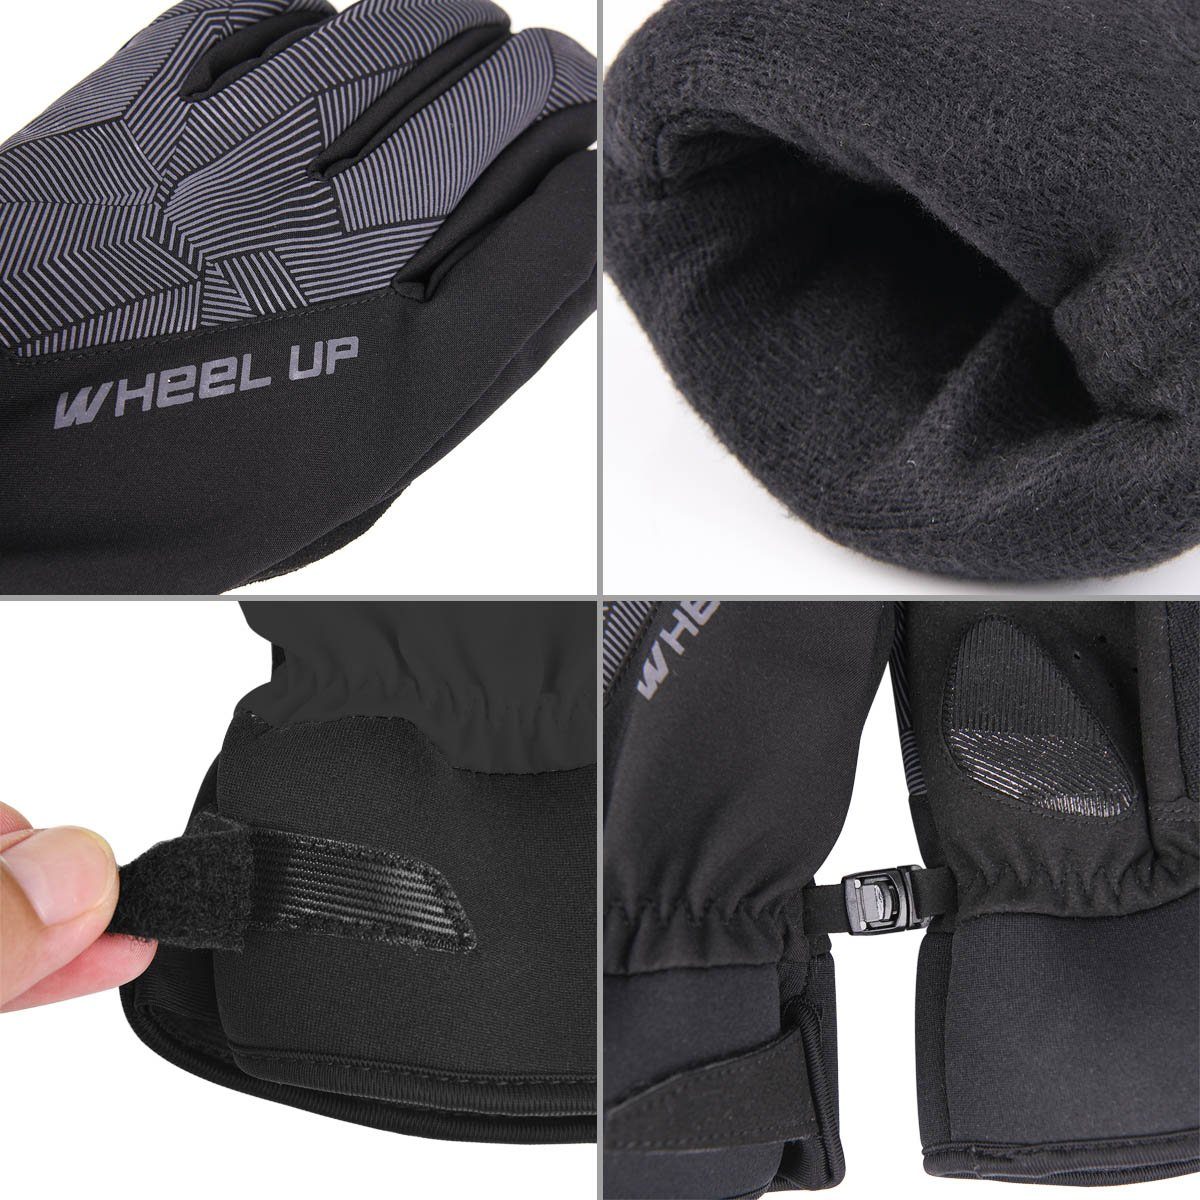 Funktion Winterhandschuhe winddicht Fahrrad-Handschuhe MidGard mit Touchscreen Skihandschuhe